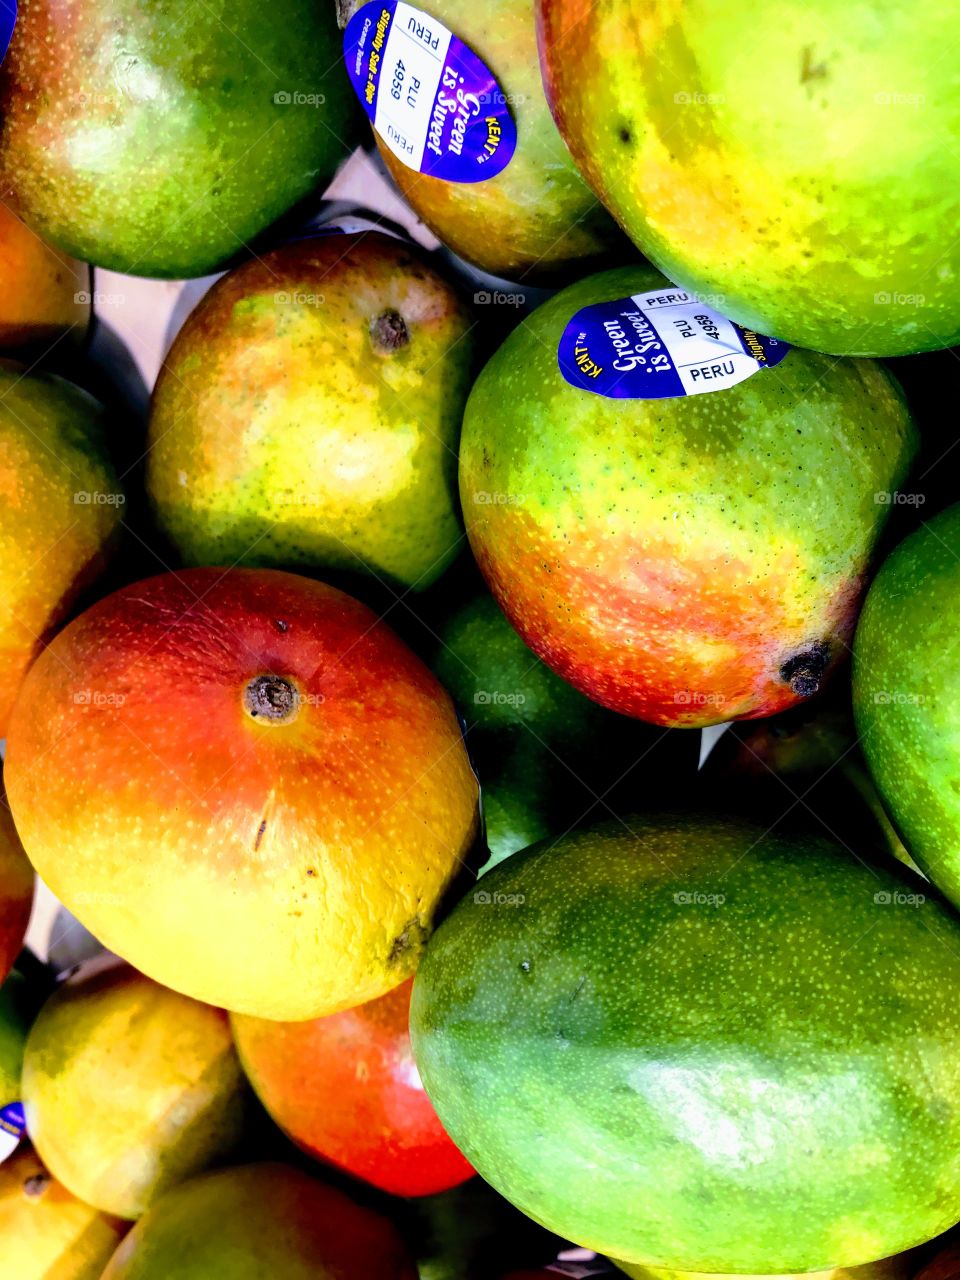 Mangos at market 